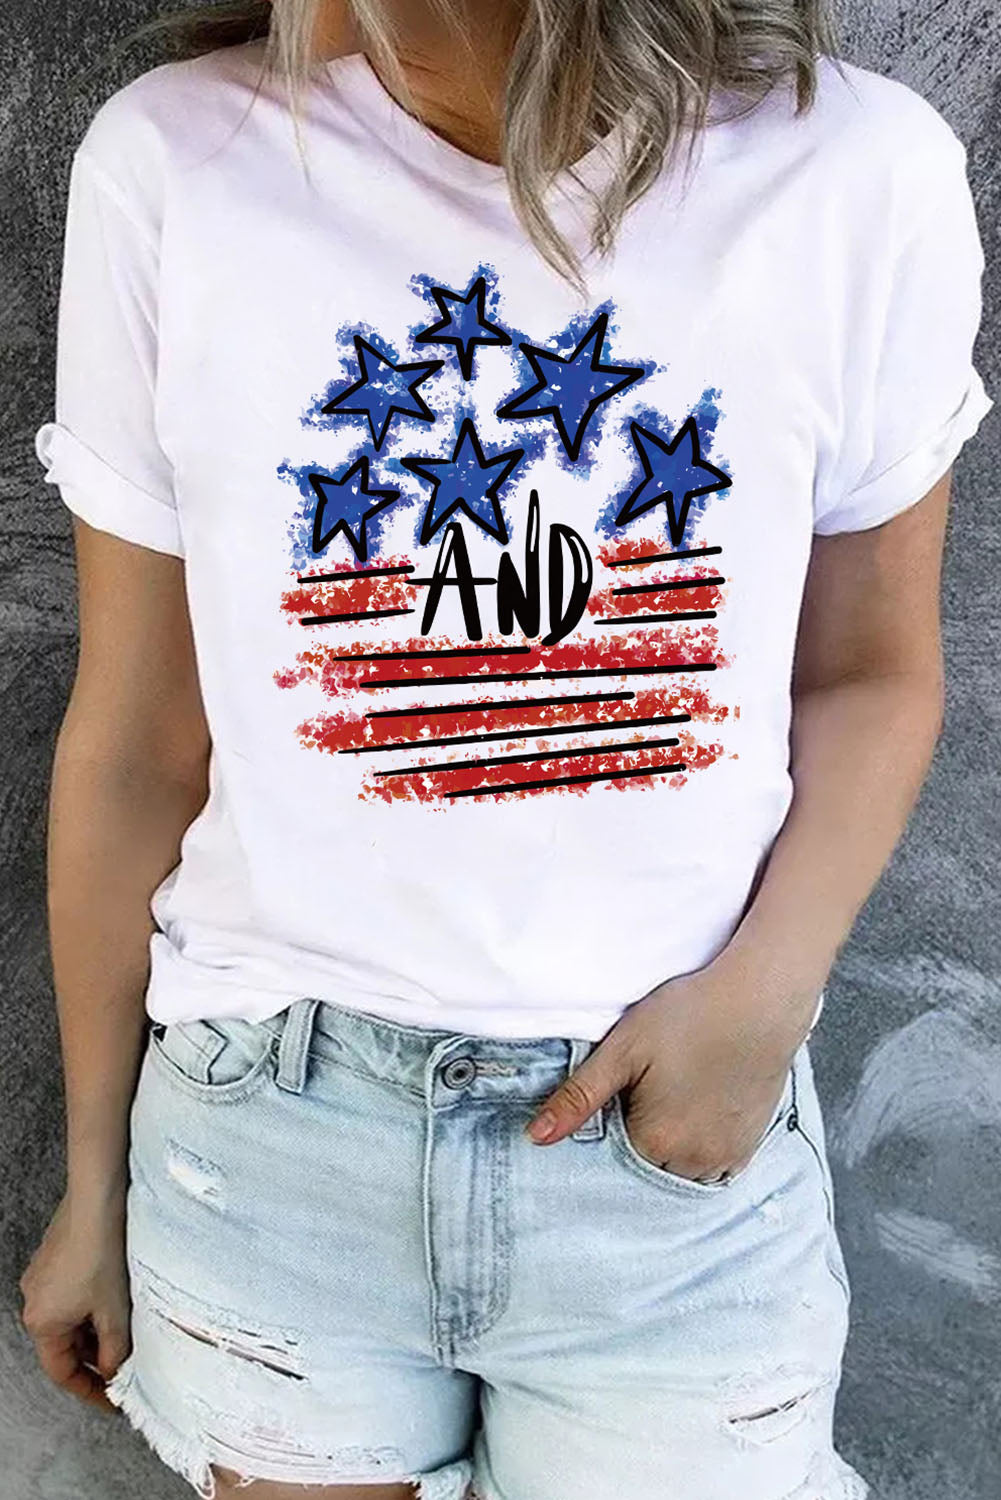 White America Flag Print Stars Stripes Crewneck Graphic T Shirt